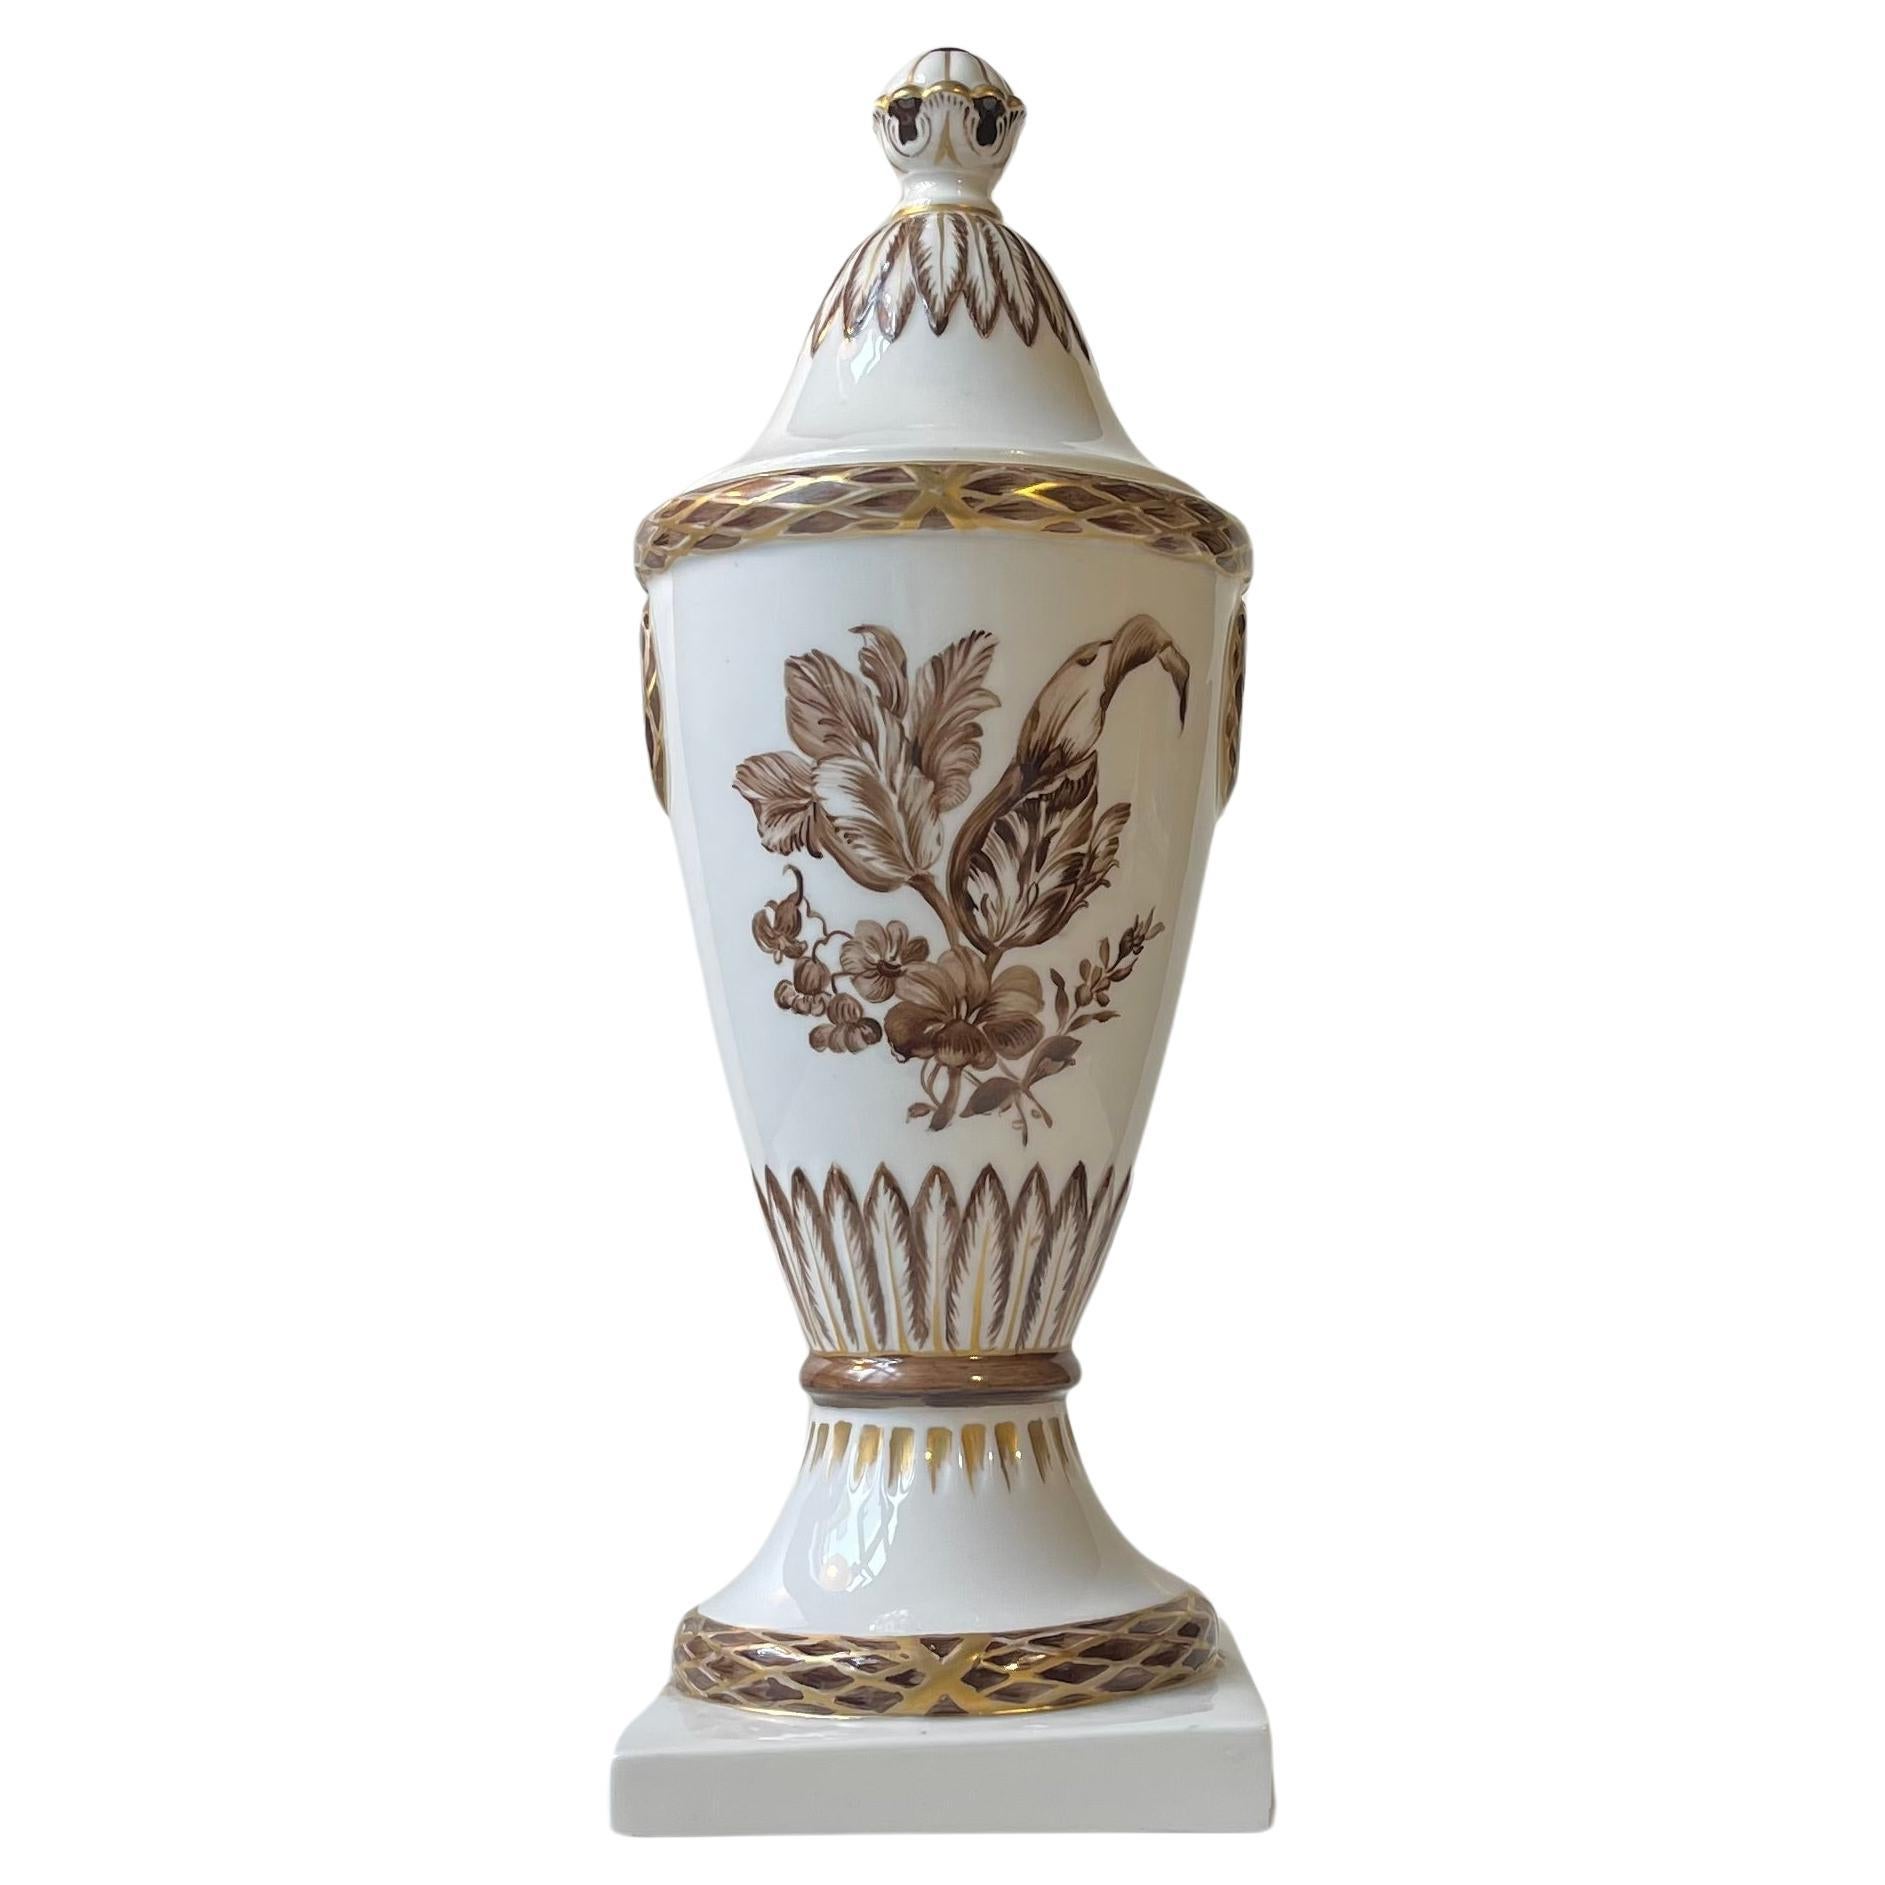 Antique Royal Copenhagen Porcelain Urne or Lidded Vase with Hand-painted motifs